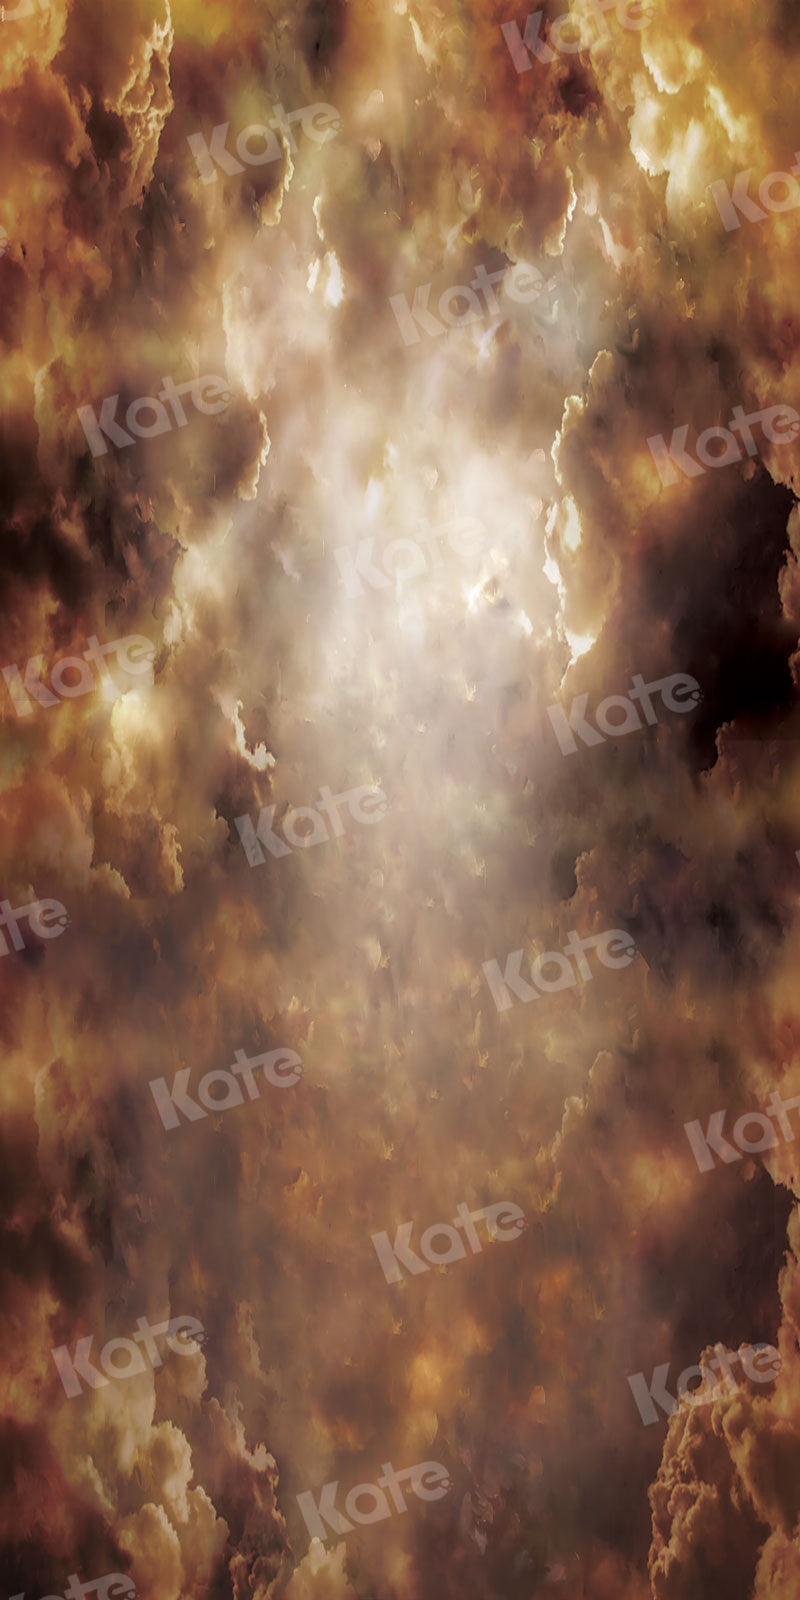 kate雲の切れ間からの日光スイープの背景写真撮影